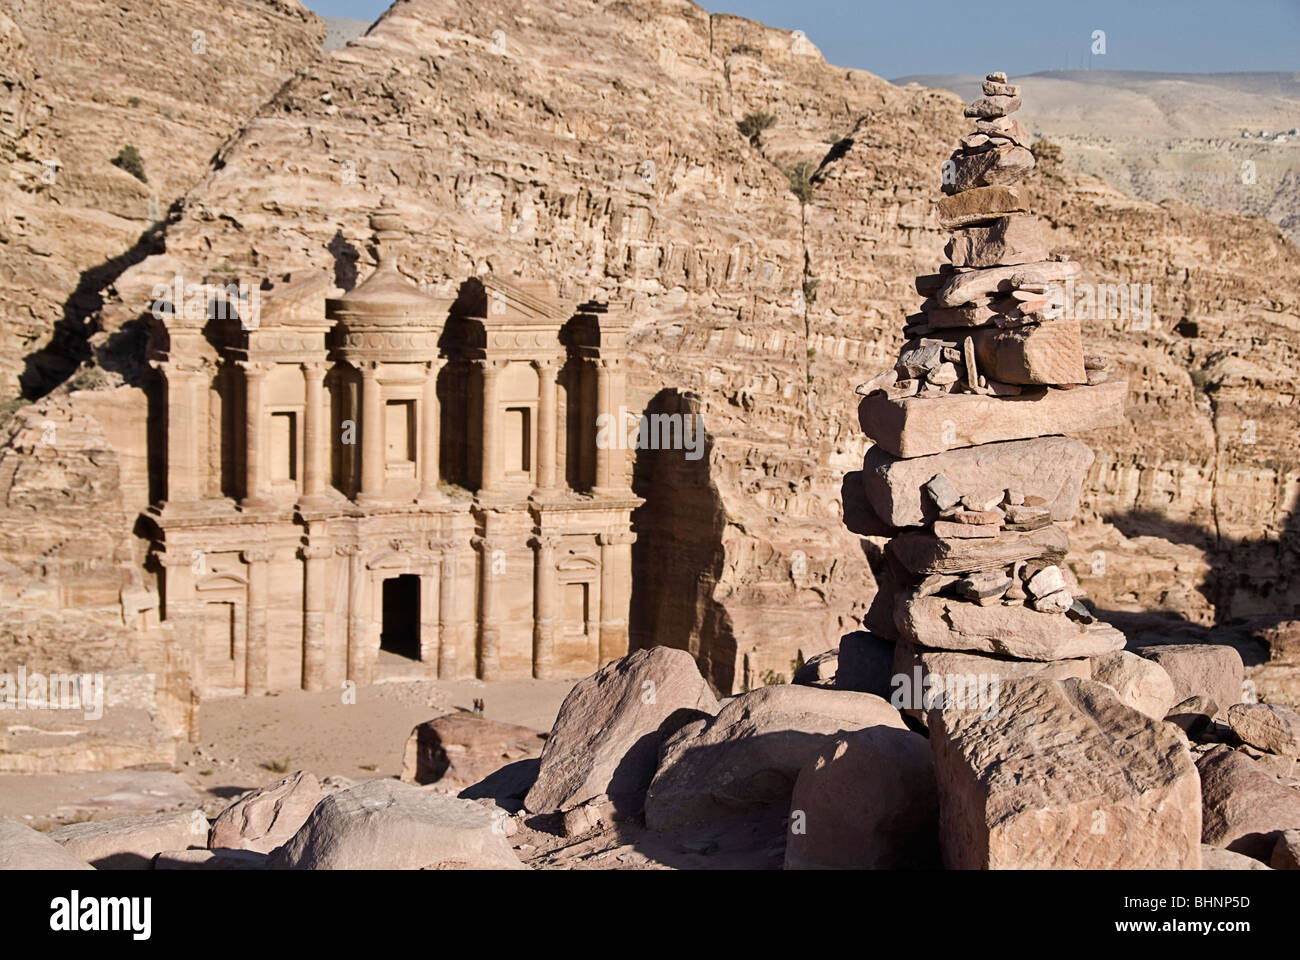 View of the Monastery facade, Petra, jordan, Asia. Stock Photo